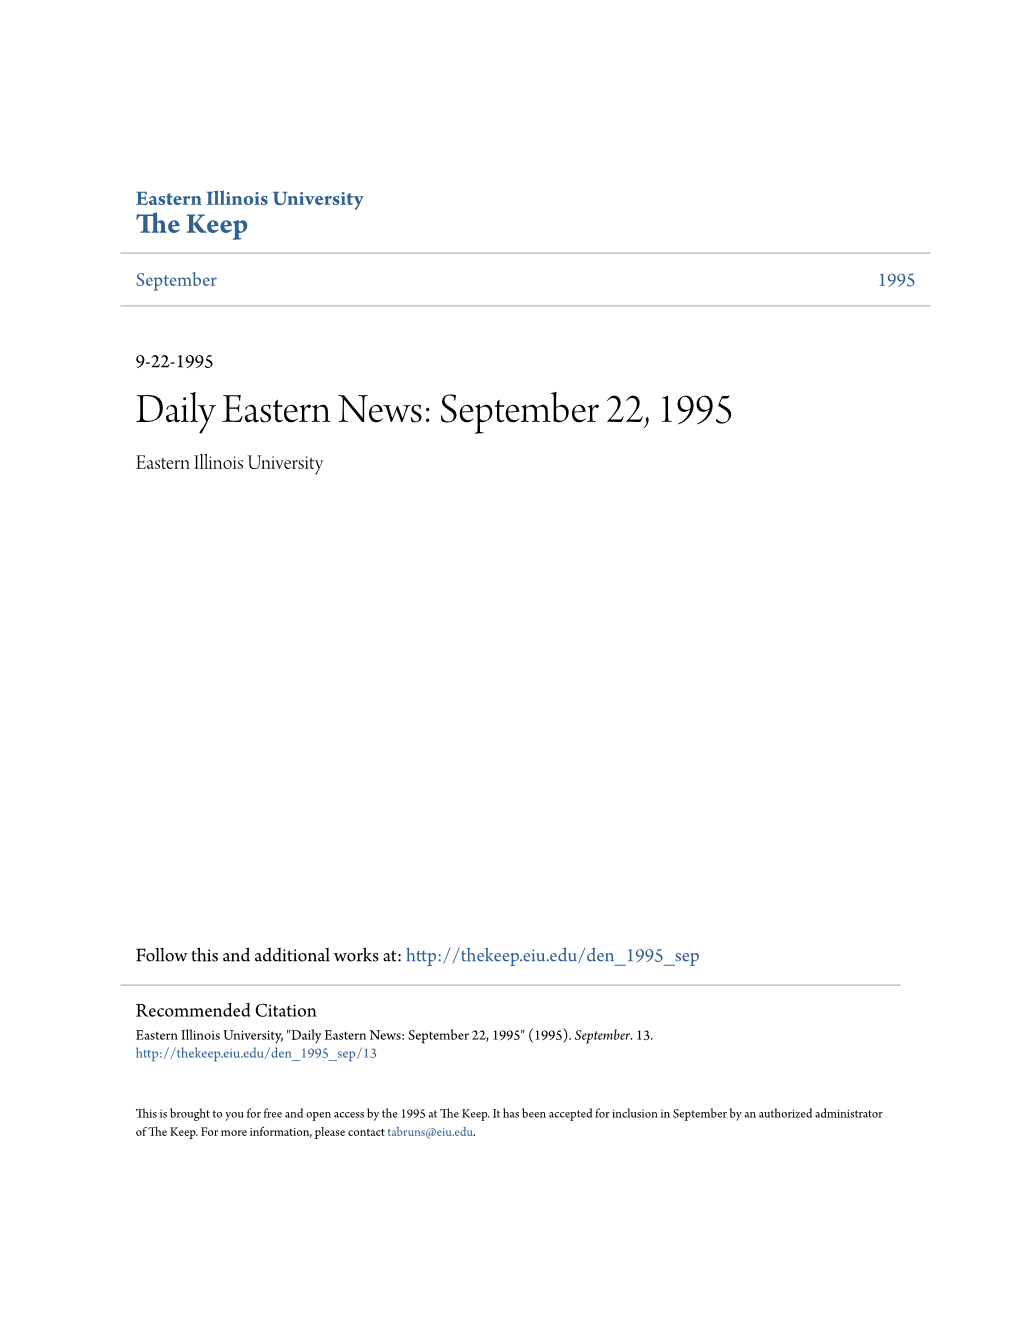 Daily Eastern News: September 22, 1995 Eastern Illinois University